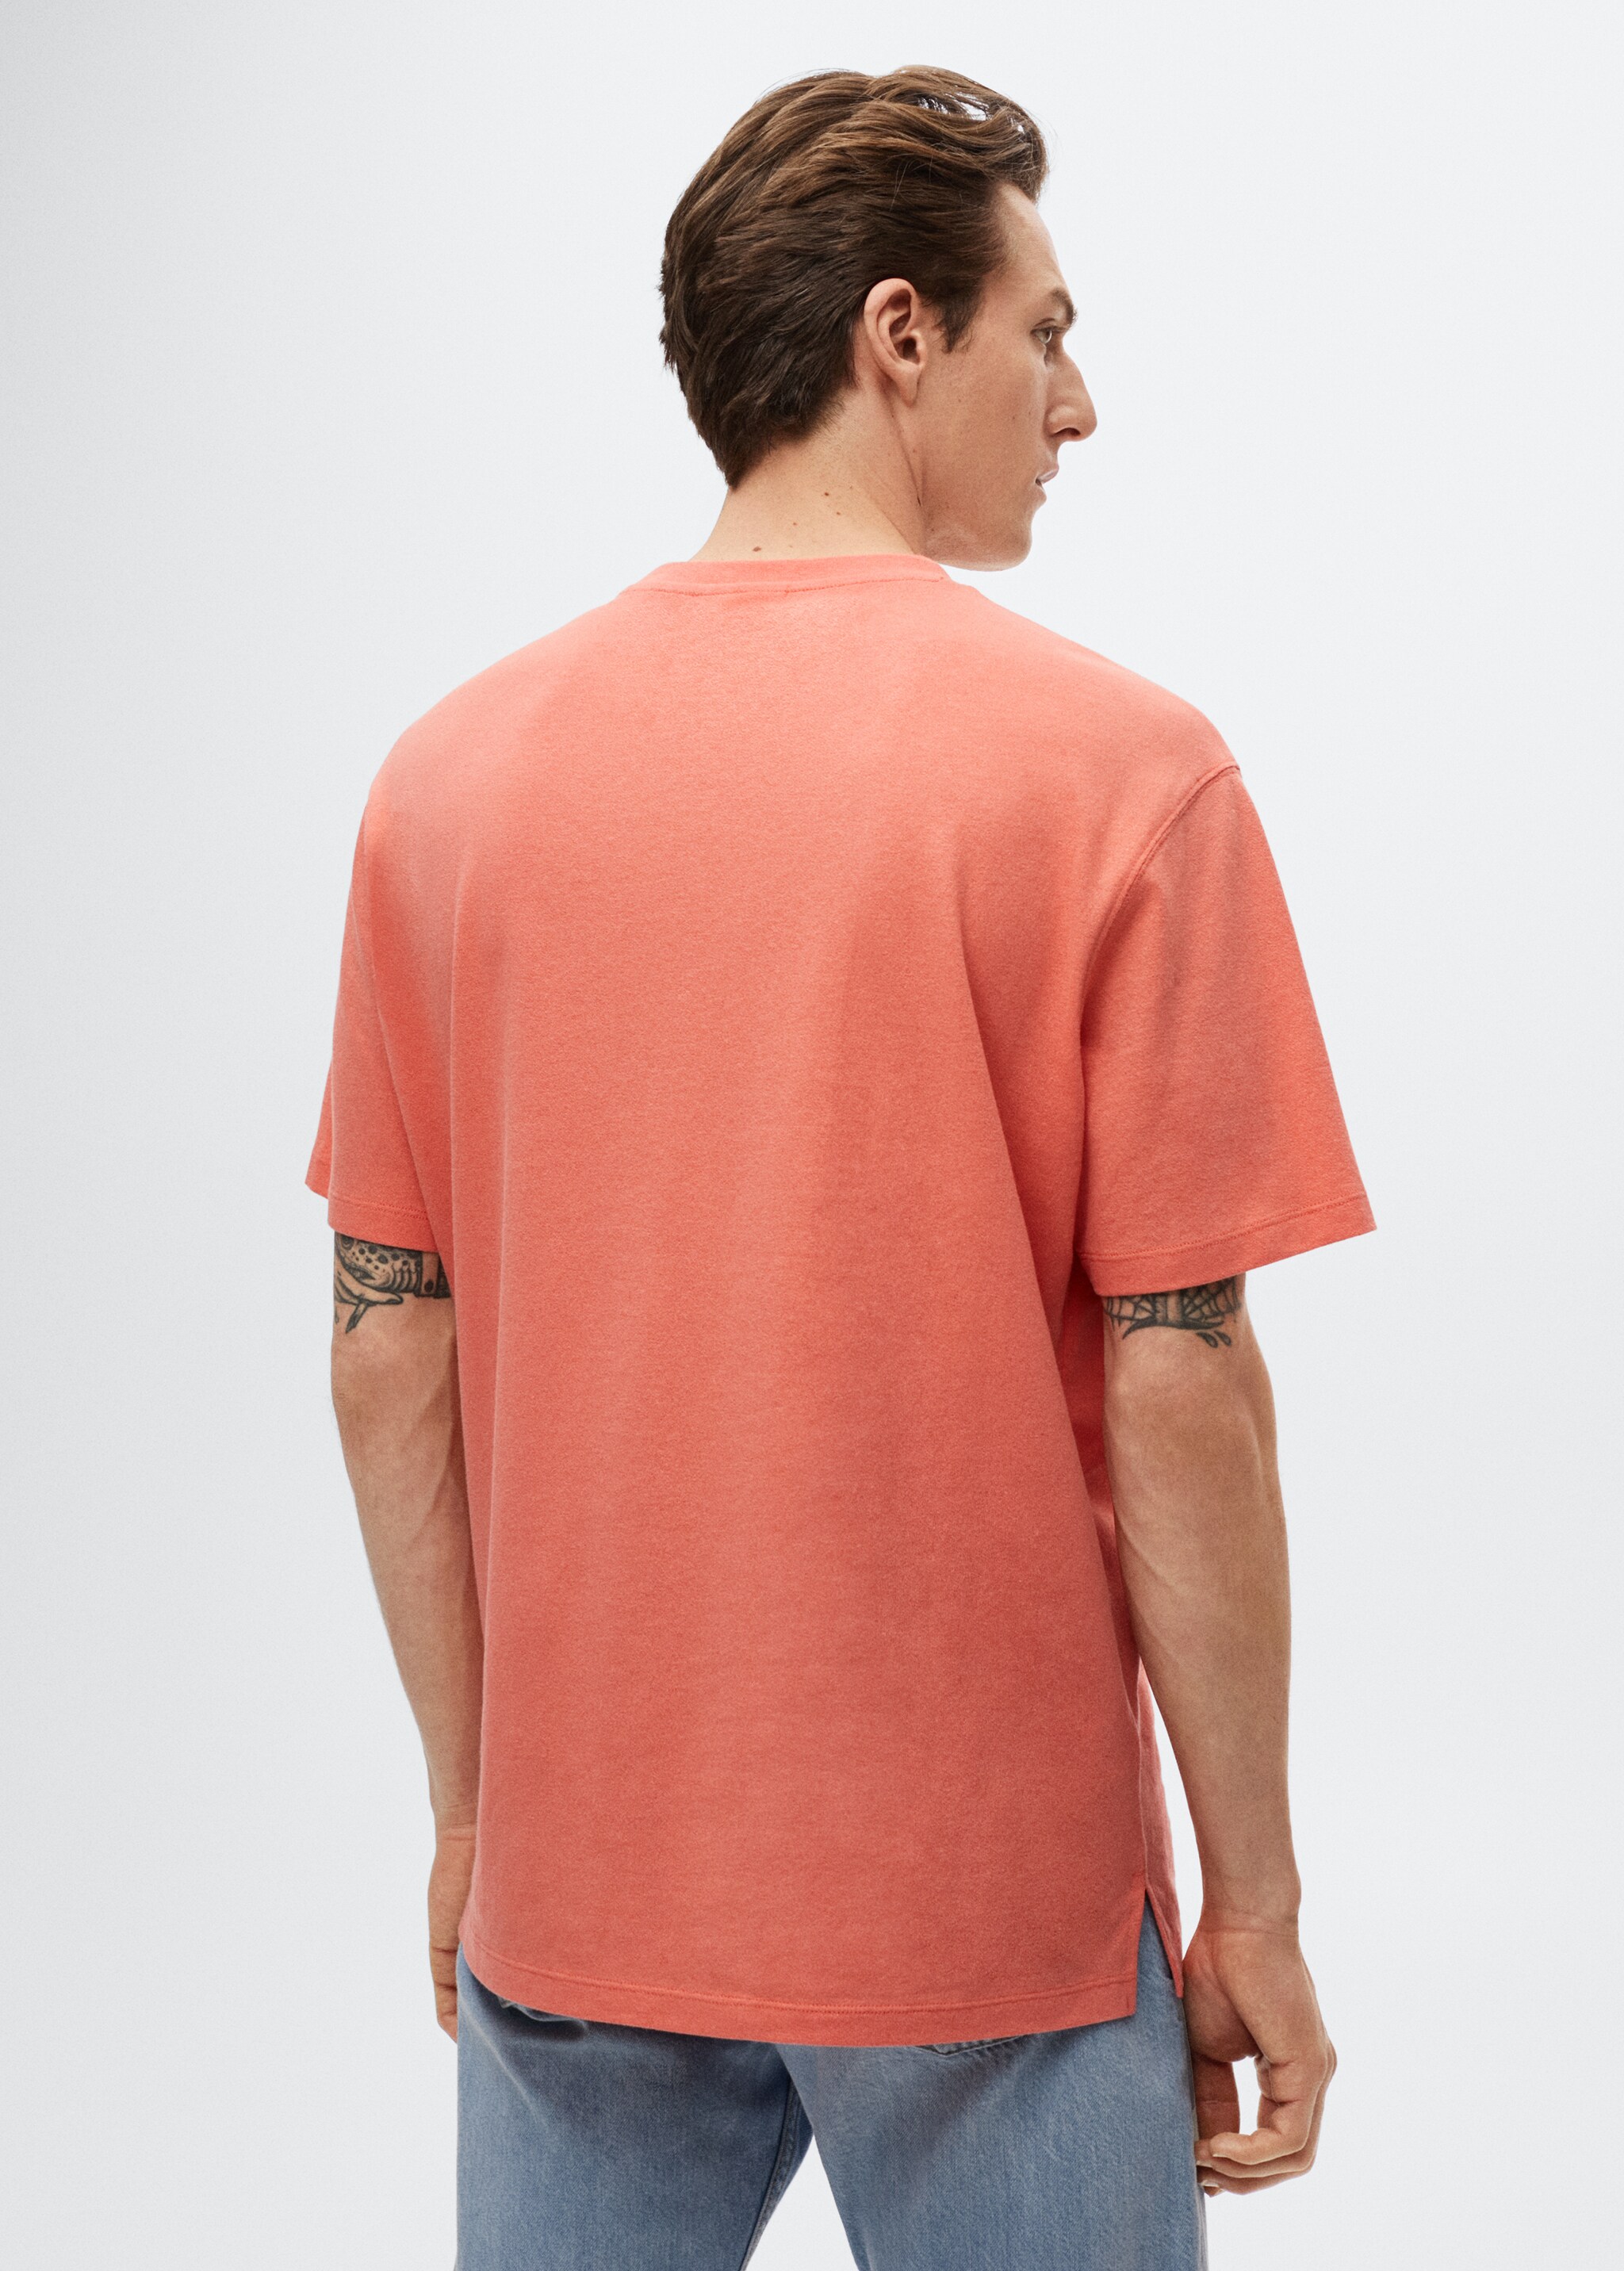 Camiseta algodón lino - Reverso del artículo